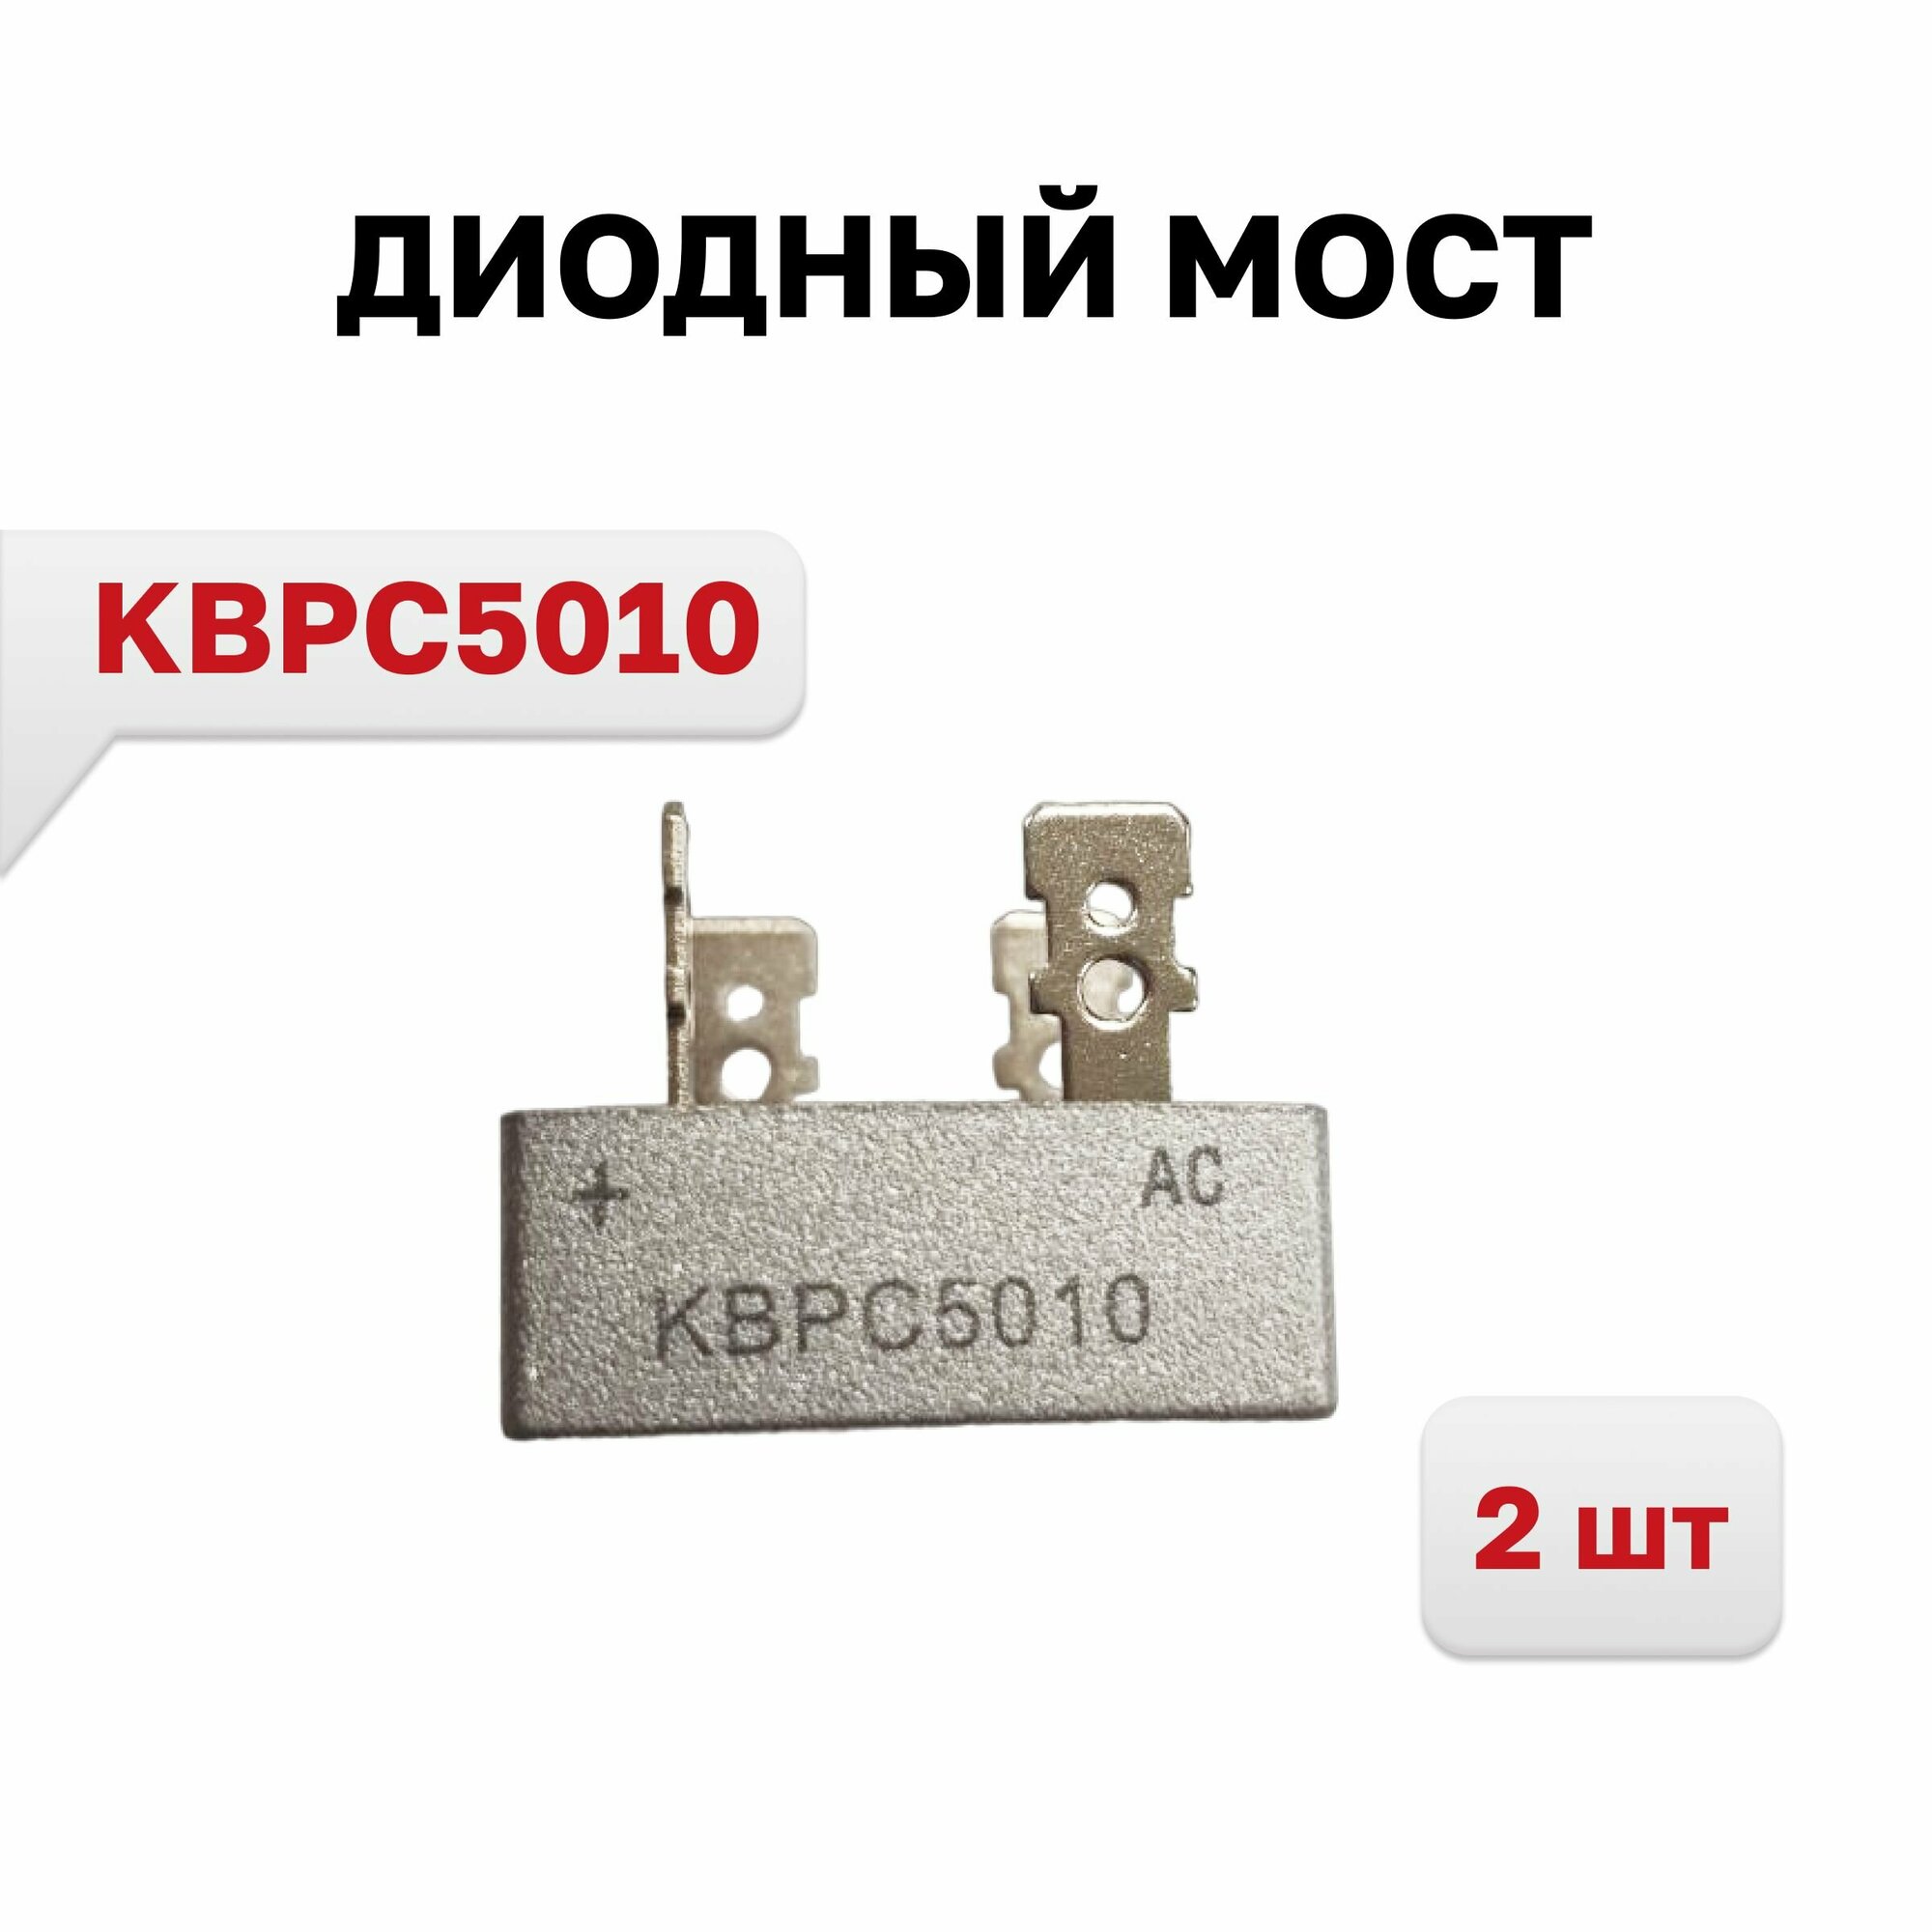 Диодный мост KBPC5010 50A 1000V, 2 шт.